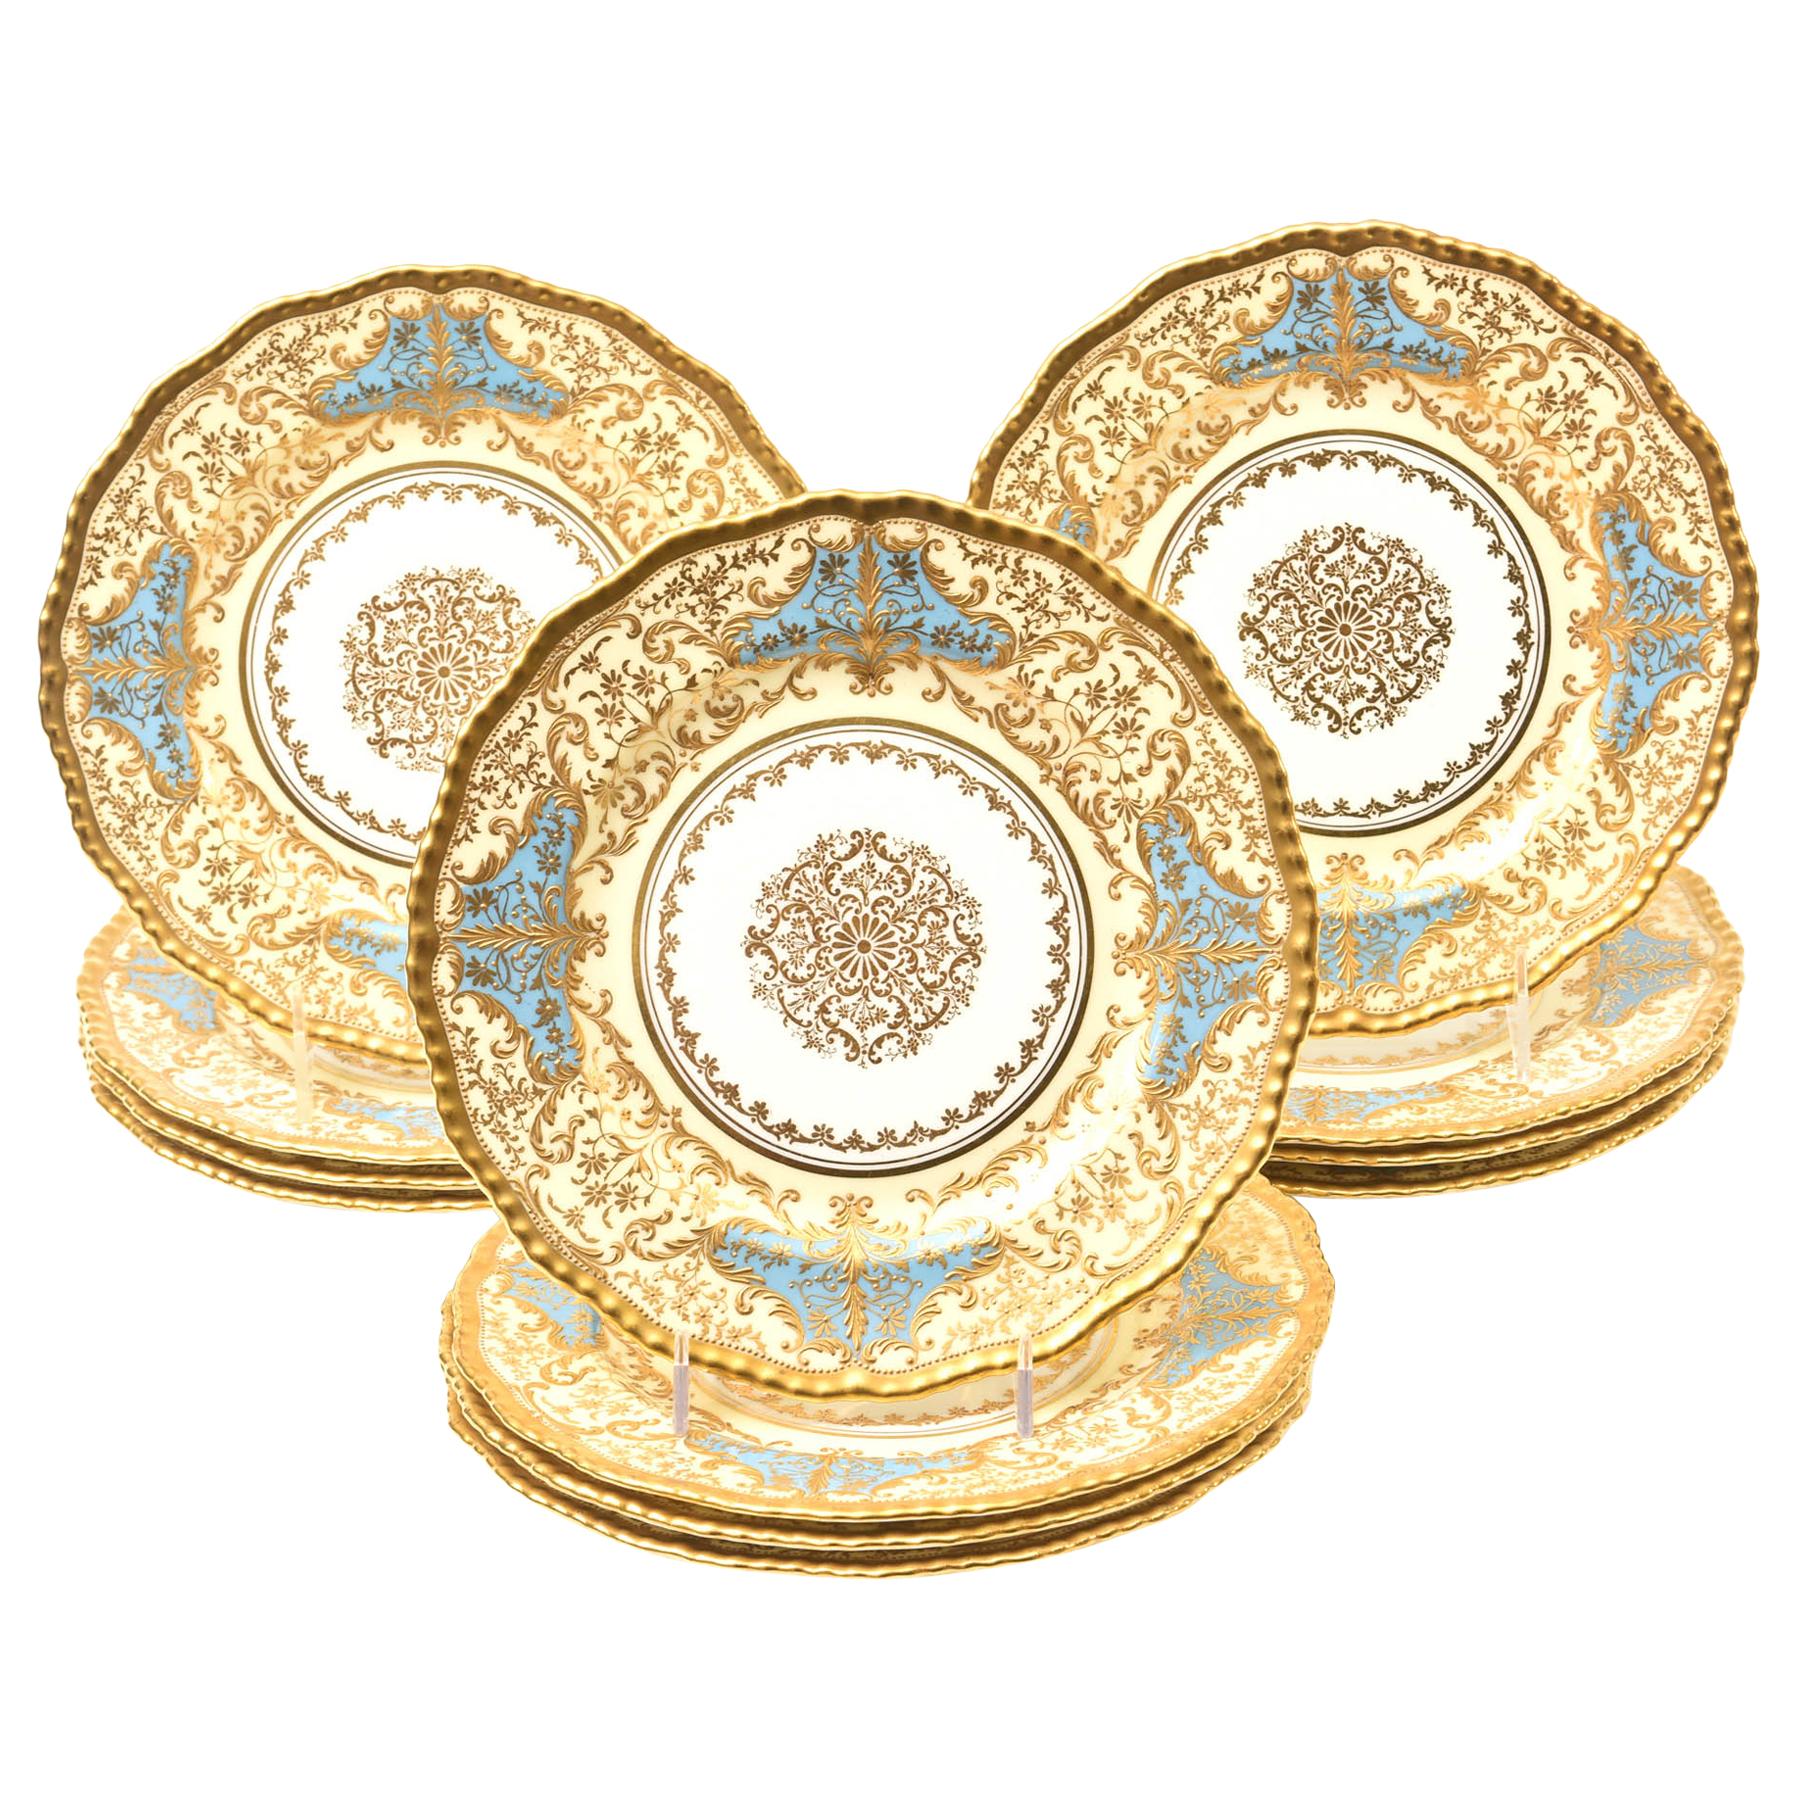 12 Exquisite Turquoise Gilt Encrusted Dessert Plates, Antique English circa 1910